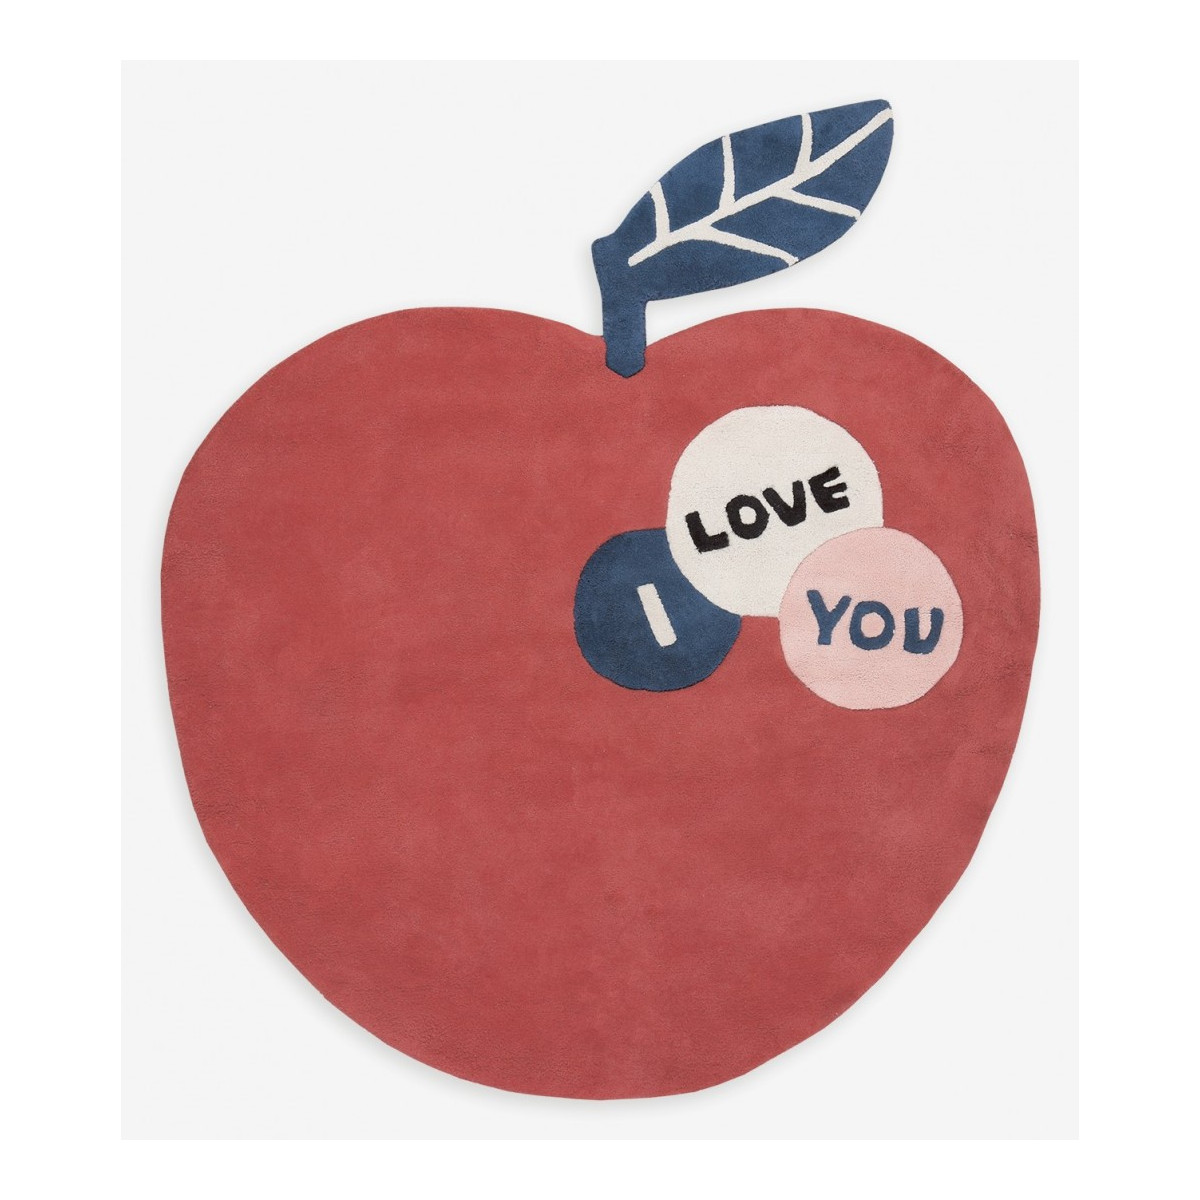 Tapis enfant Pomme rouge "Big Apple" avec le message "i love you" - Lilipinso